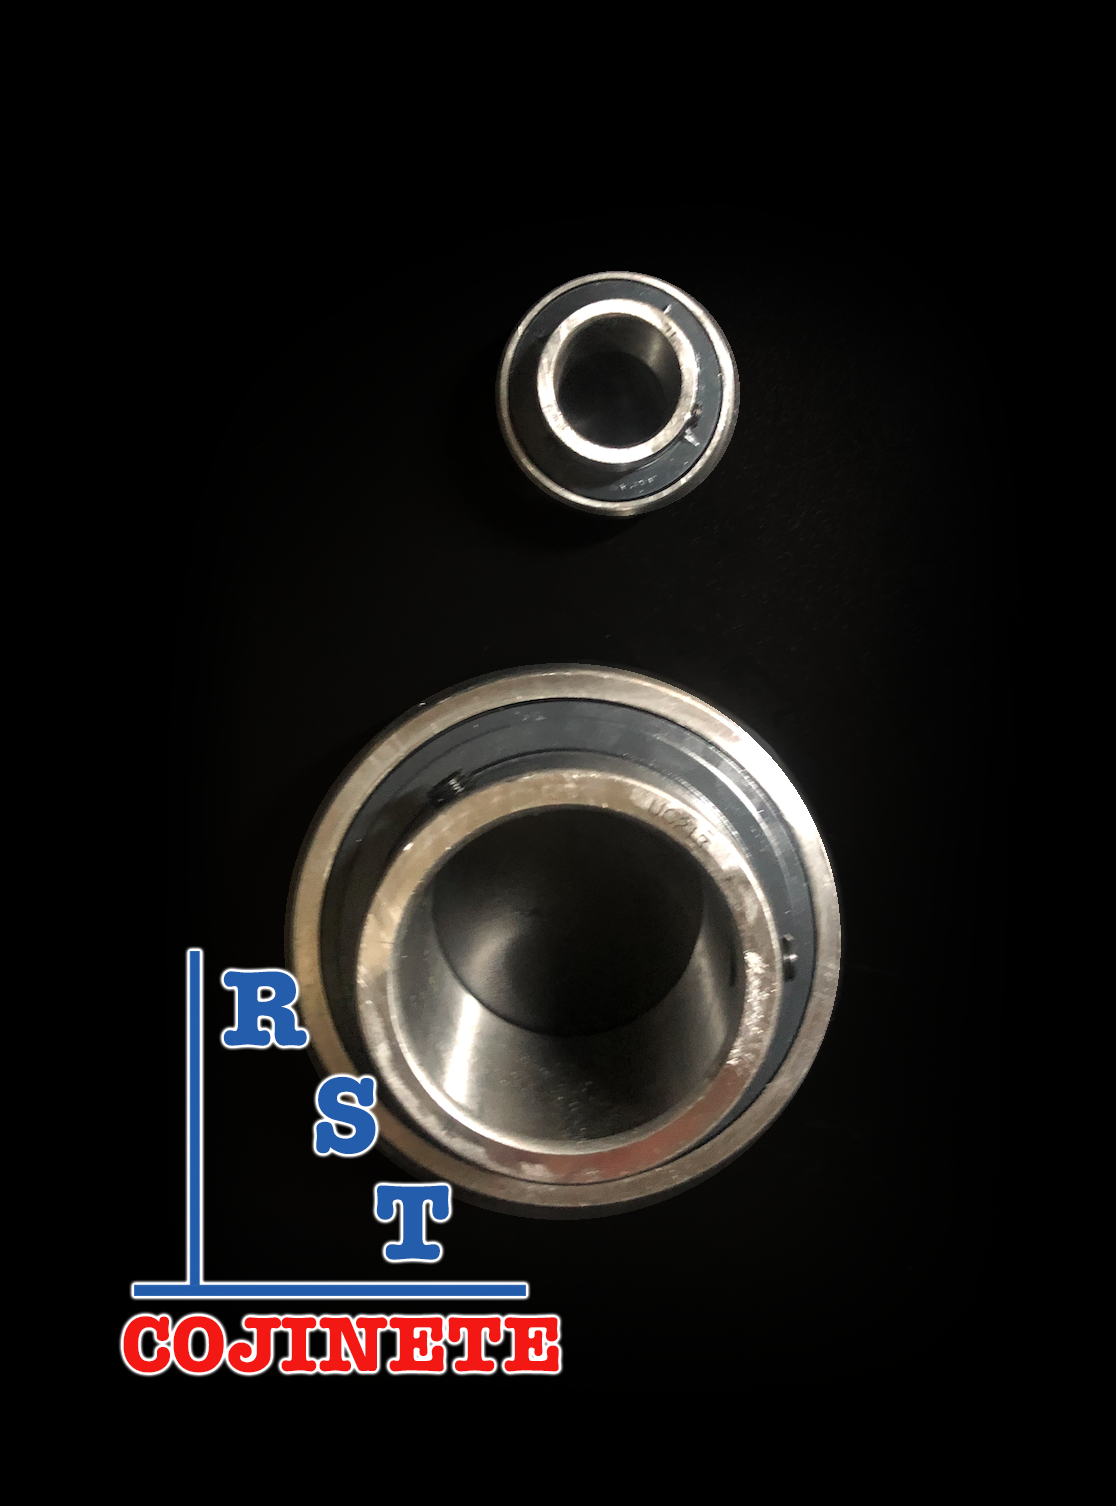 Cojinete insertable UC206-19 | Rodamiento para eje de 1-3/16" rígido de bolas con sello de hule para chumacera